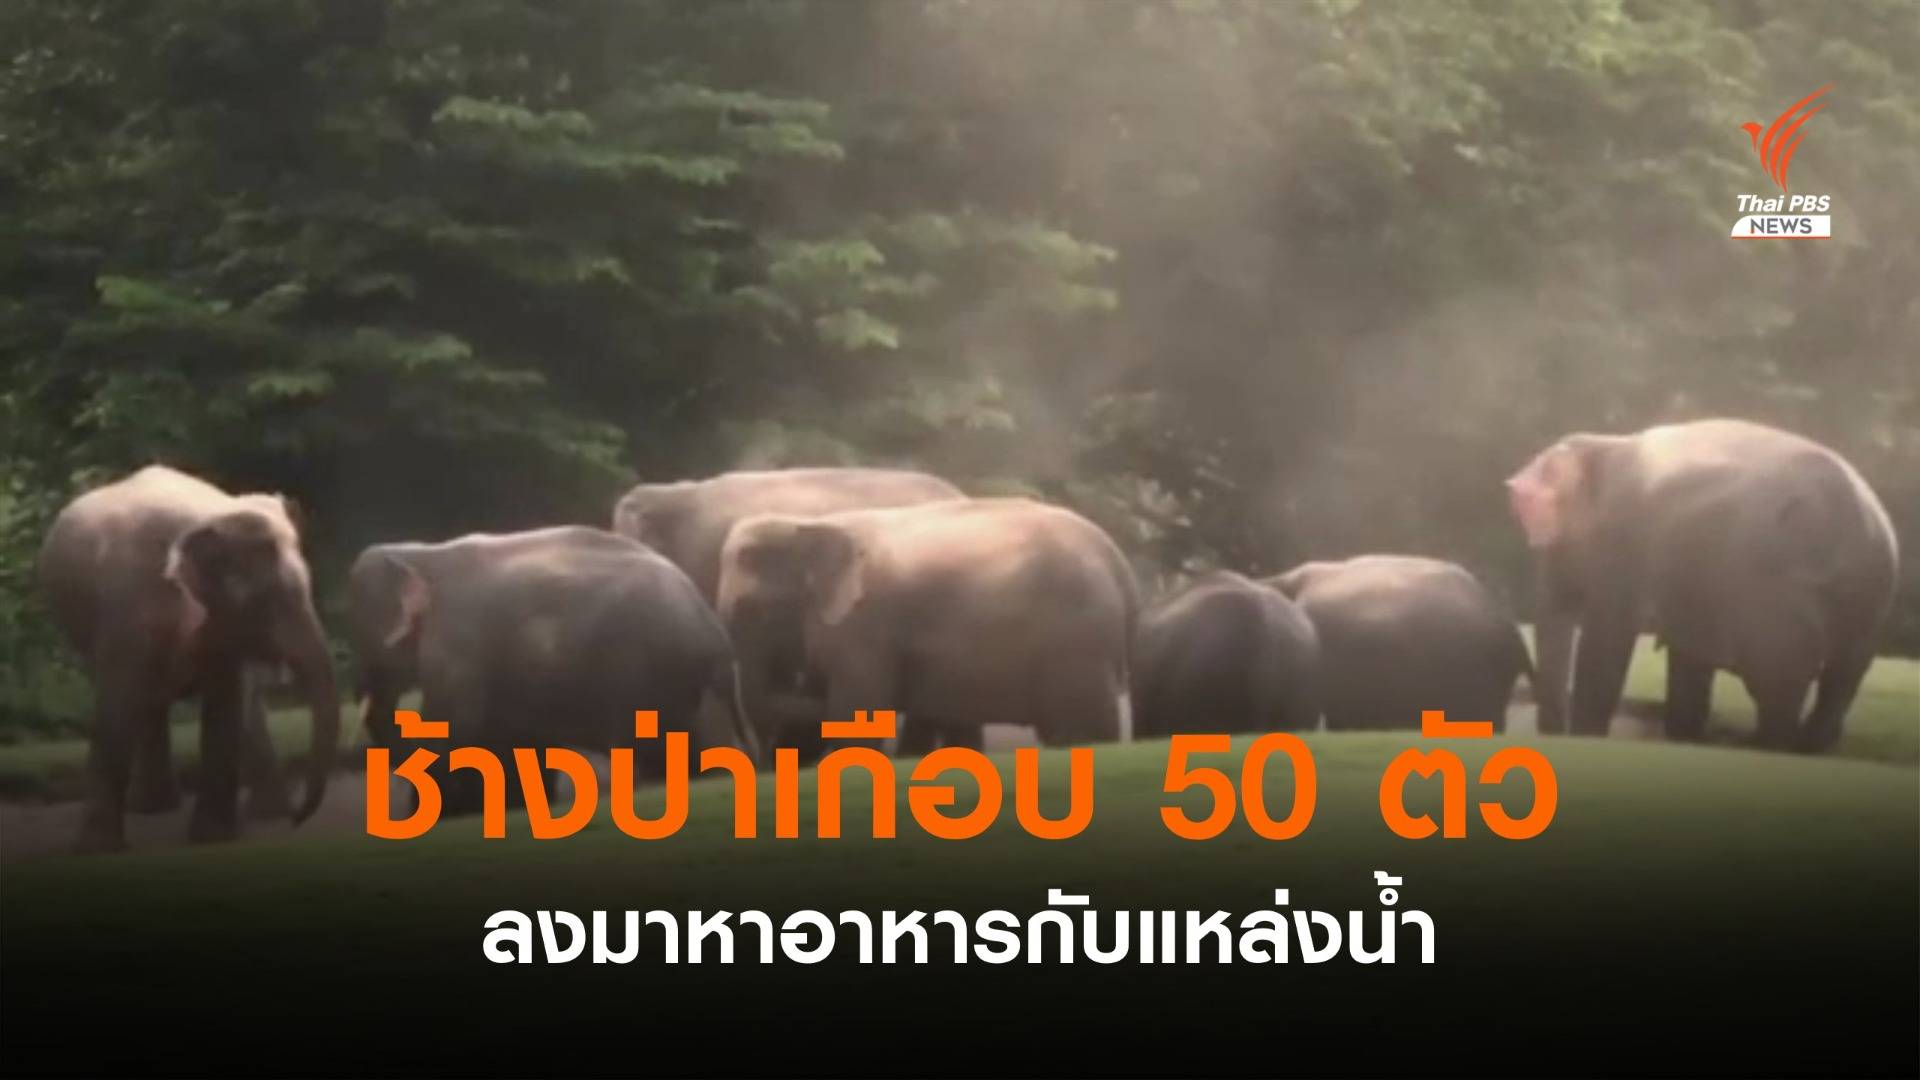 ช้างป่าเกือบ 50 ตัว ลงมาหาอาหารกับแหล่งน้ำ